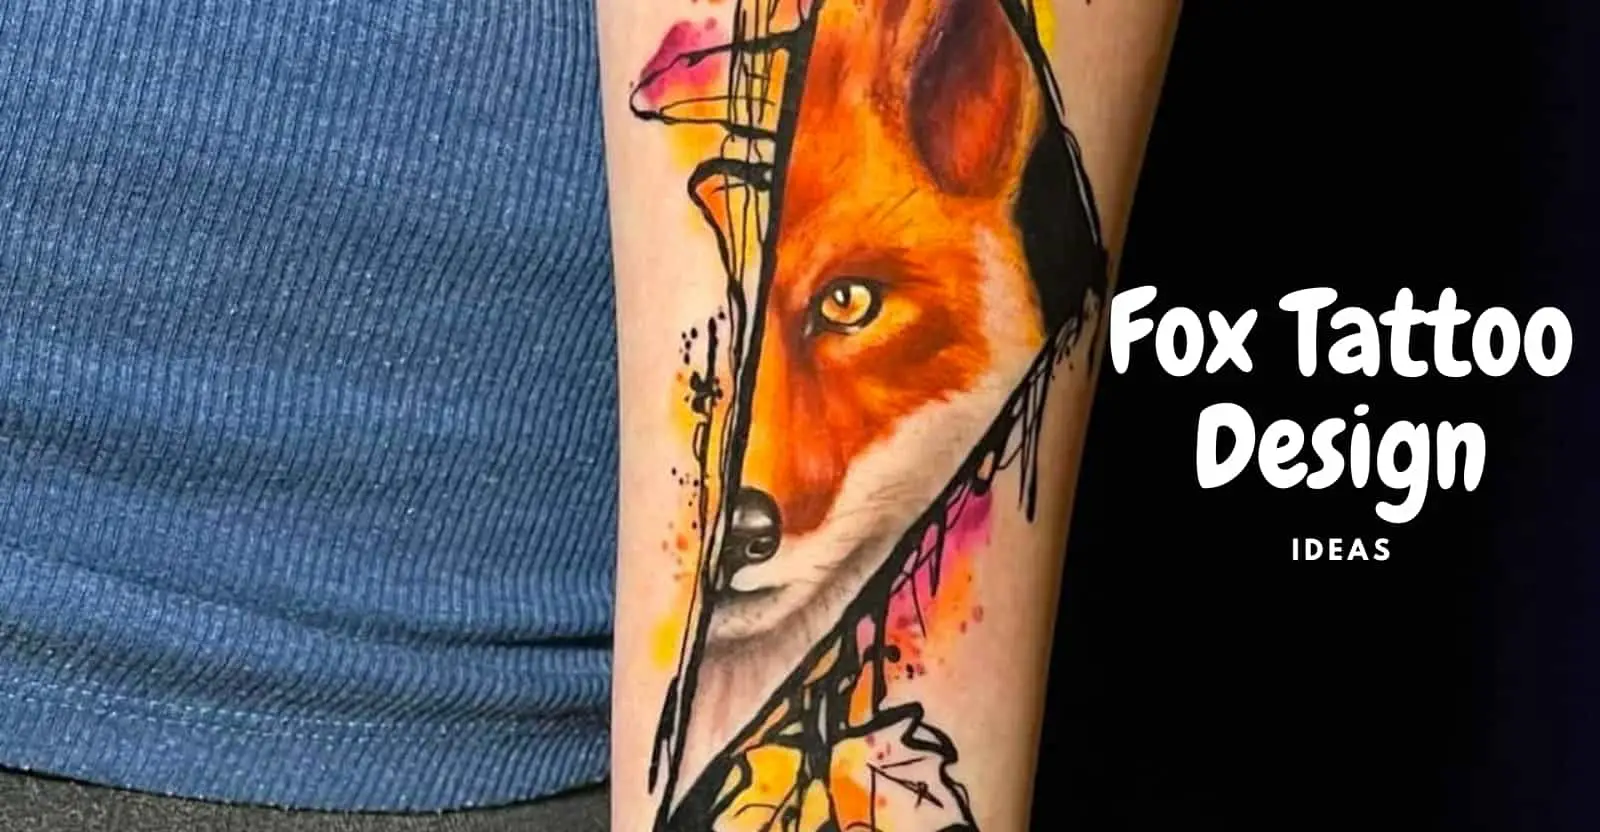 Fox tattoo design ideas